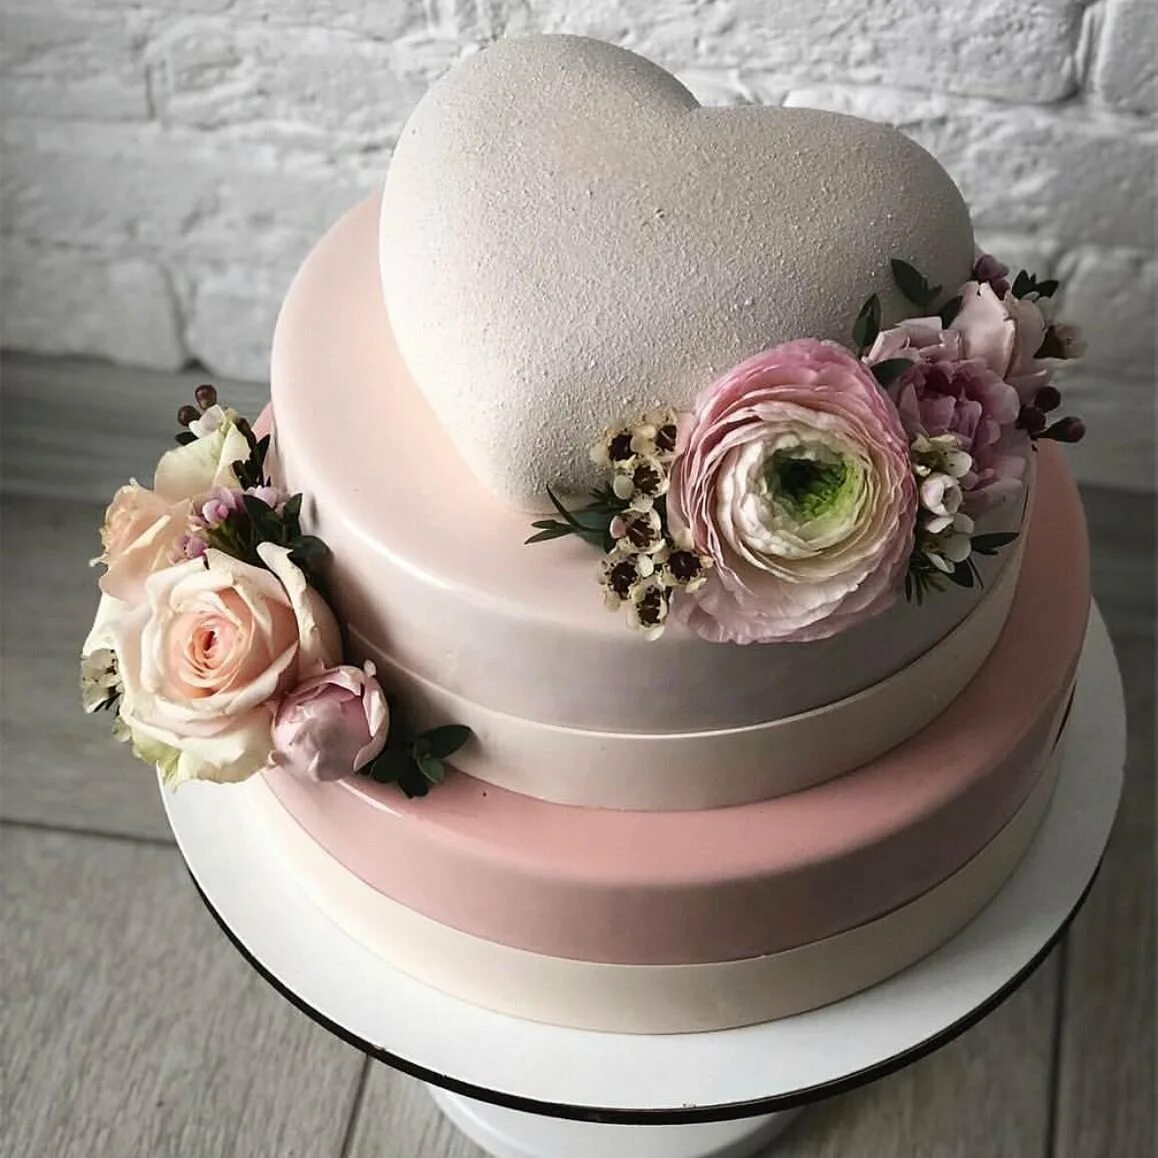 Cake icings. 2х ярусный муссовый торт. Свадебный муссовый торт. Красивый декор торта. Двуярусный муссовый торт.